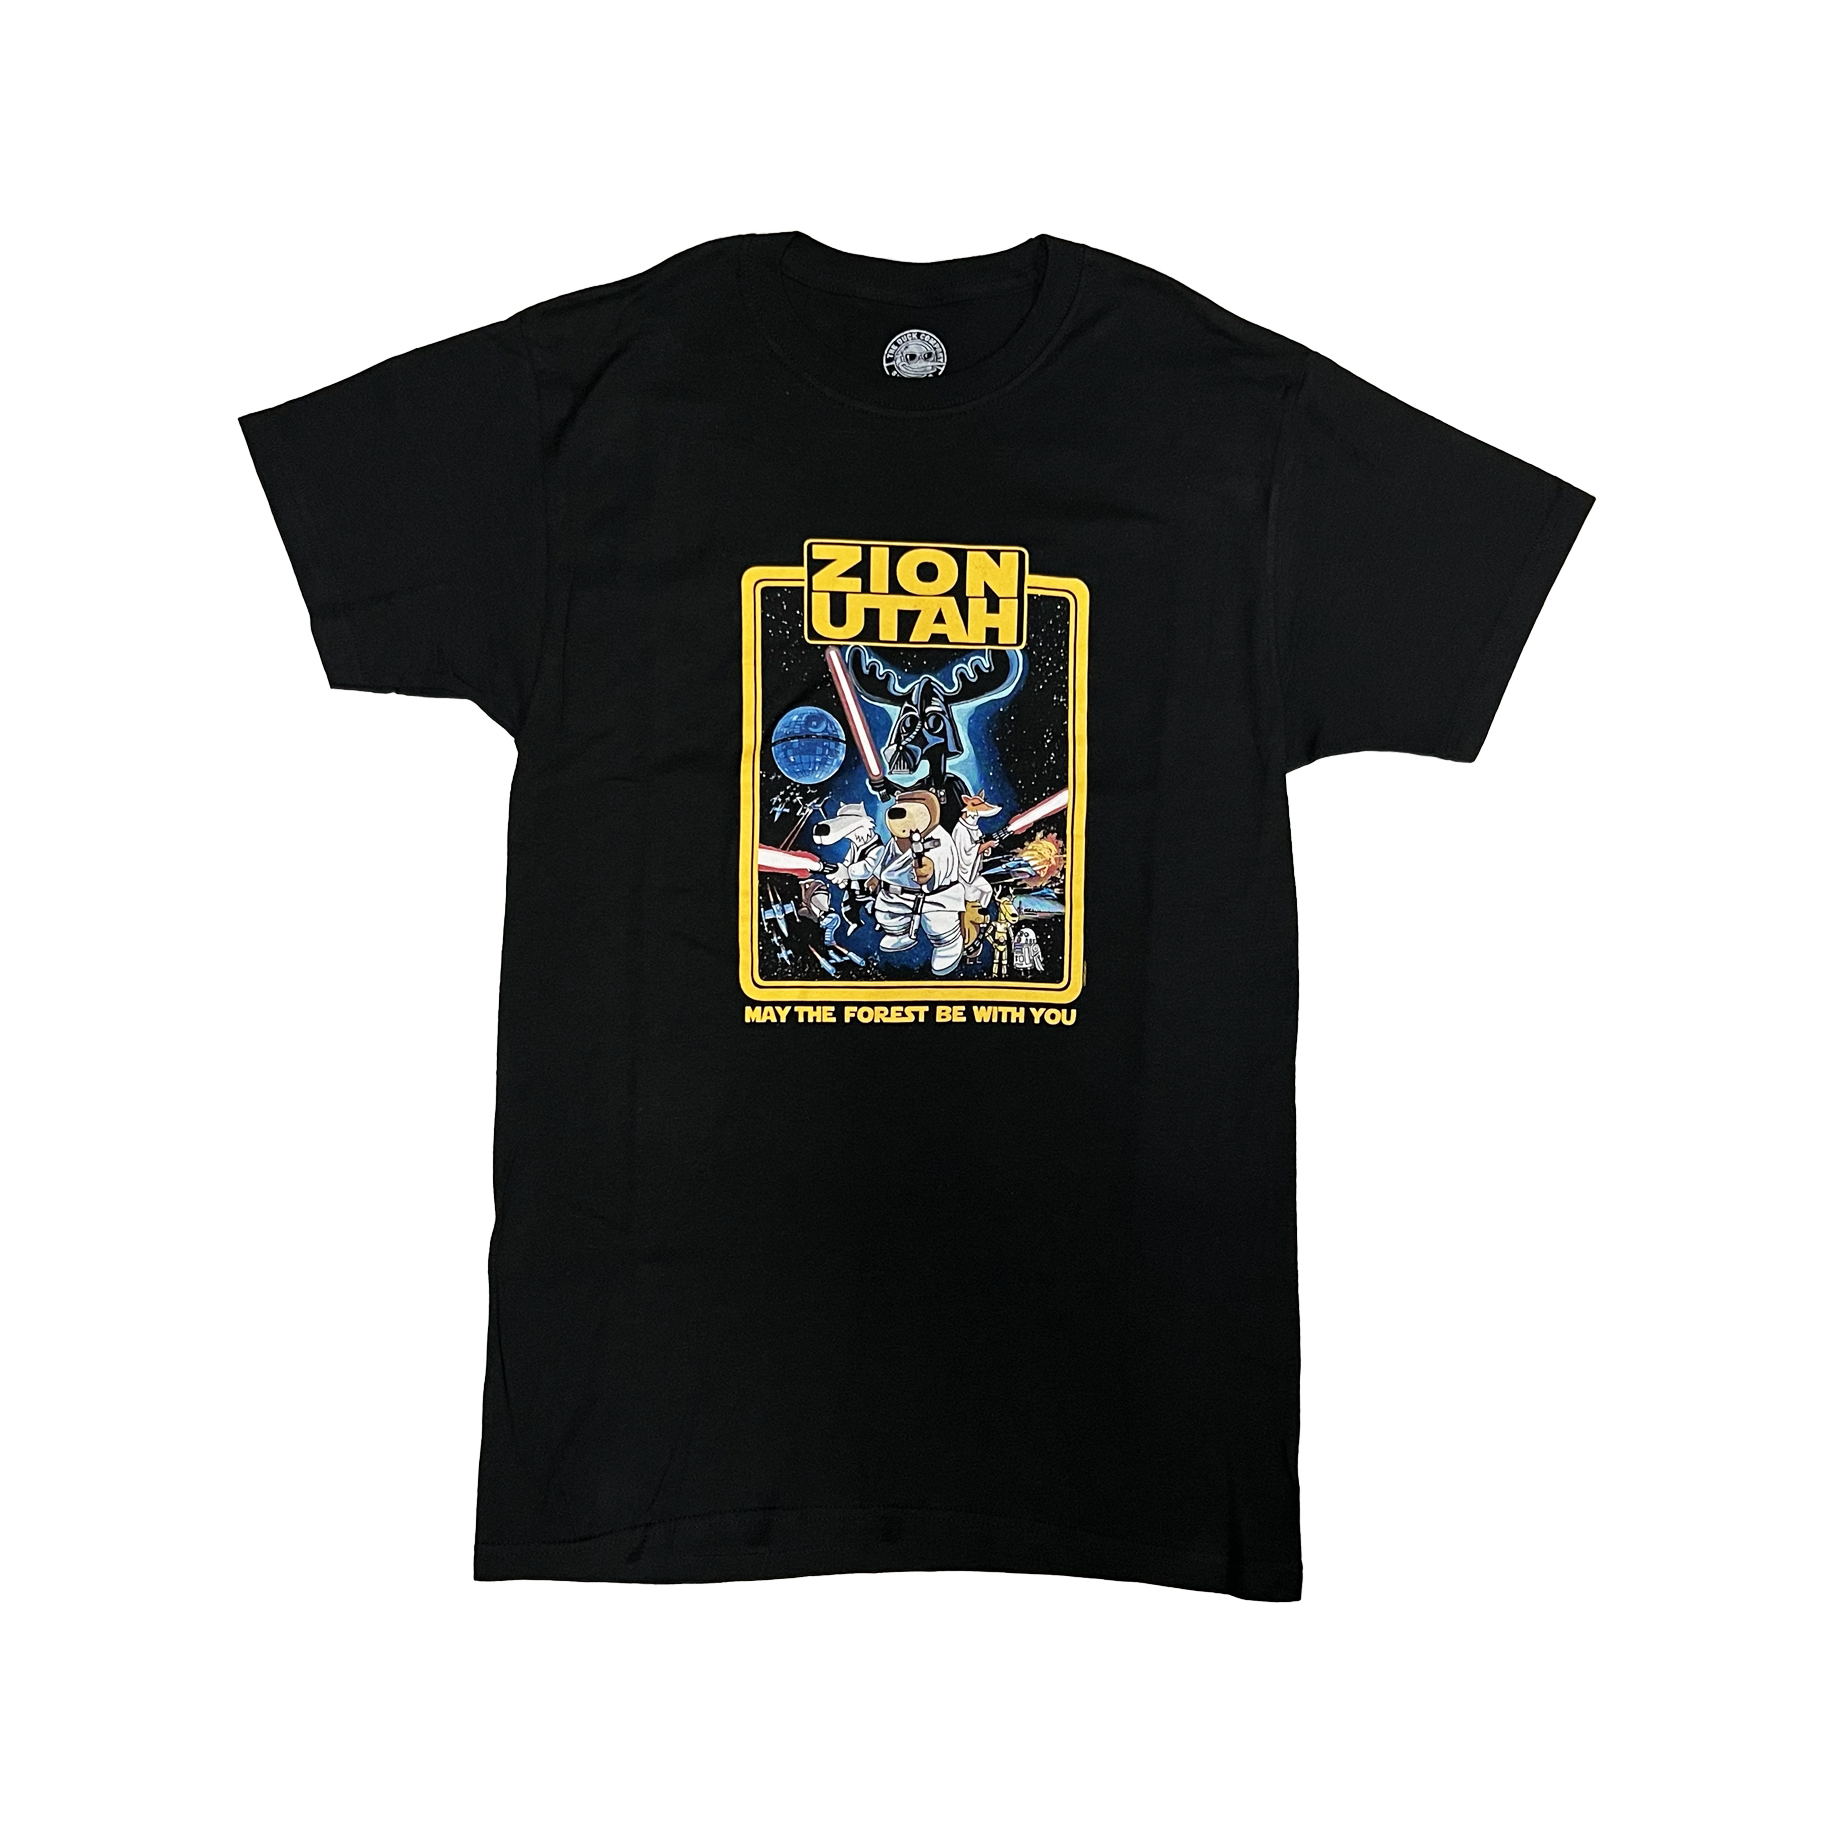 Zion Star Wars T Shirt Unisex Trailhead Ts And Gear